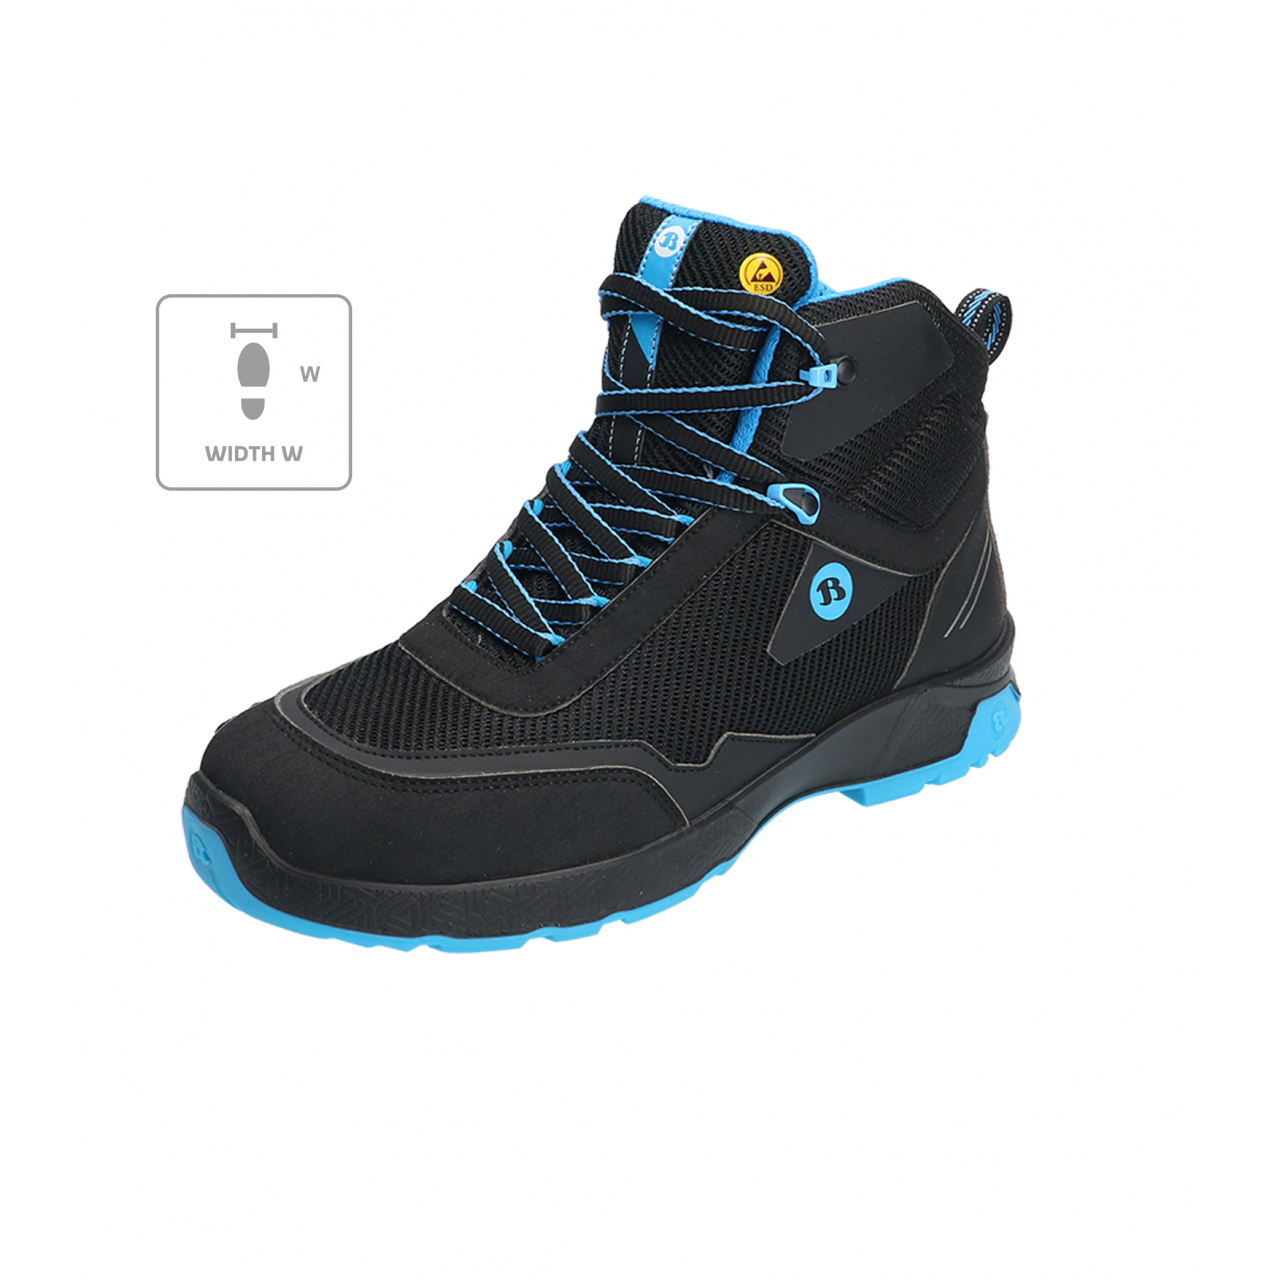 Kotníkové boty Bata Industrials Summ One W - černé-modré, 41